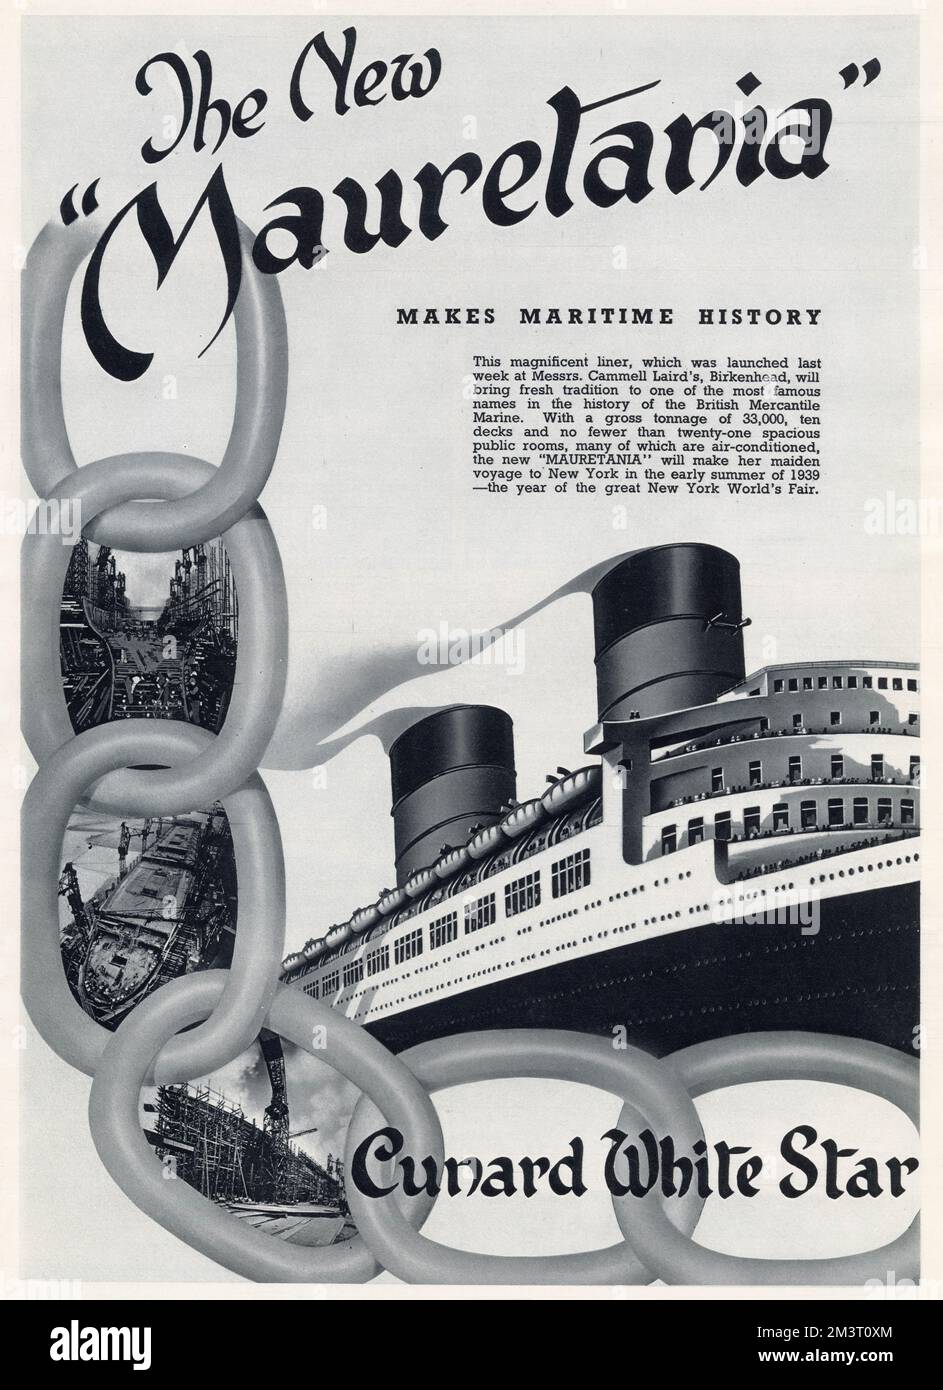 Pubblicità per RMS Mauretania, la nuova società Cunard-White Star, Ocean Liner. Foto Stock